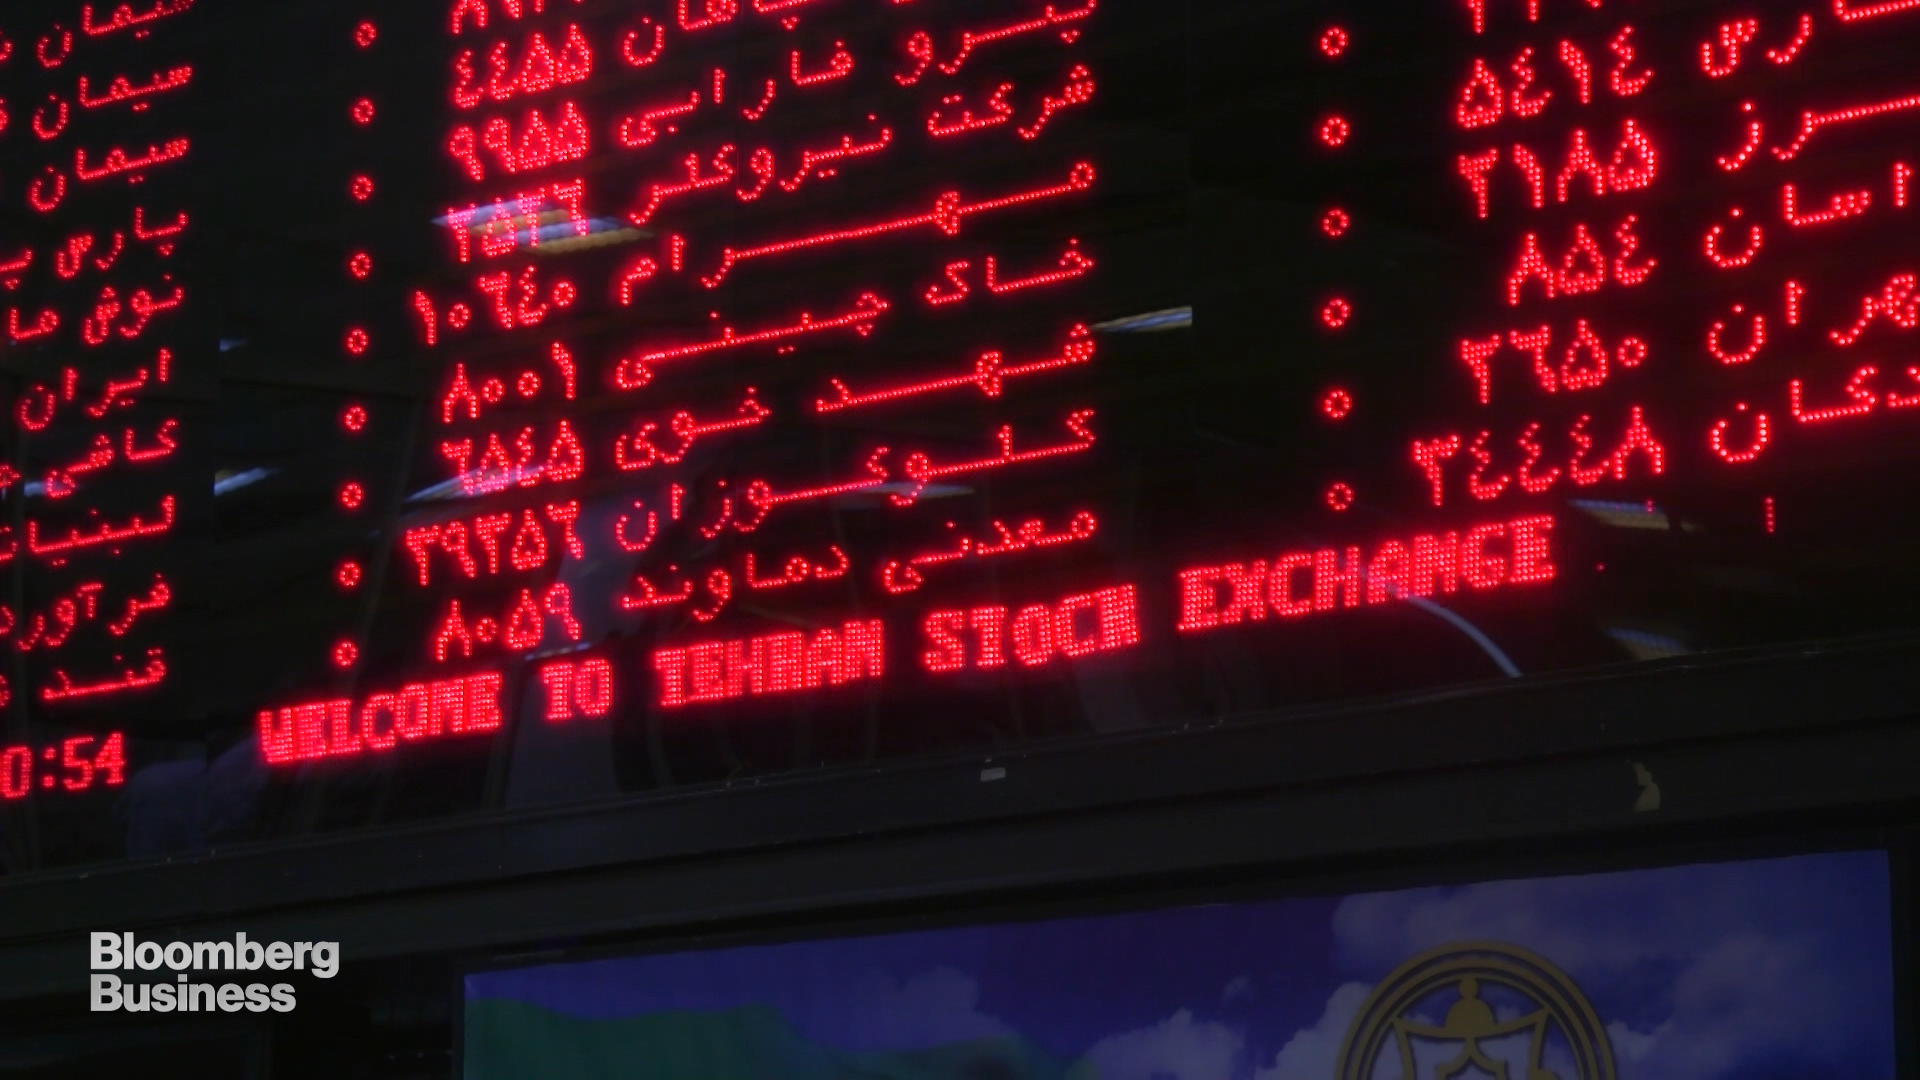 Tehran Stock Exchange, Iran Fara Bourse's Track Record for 2016-17